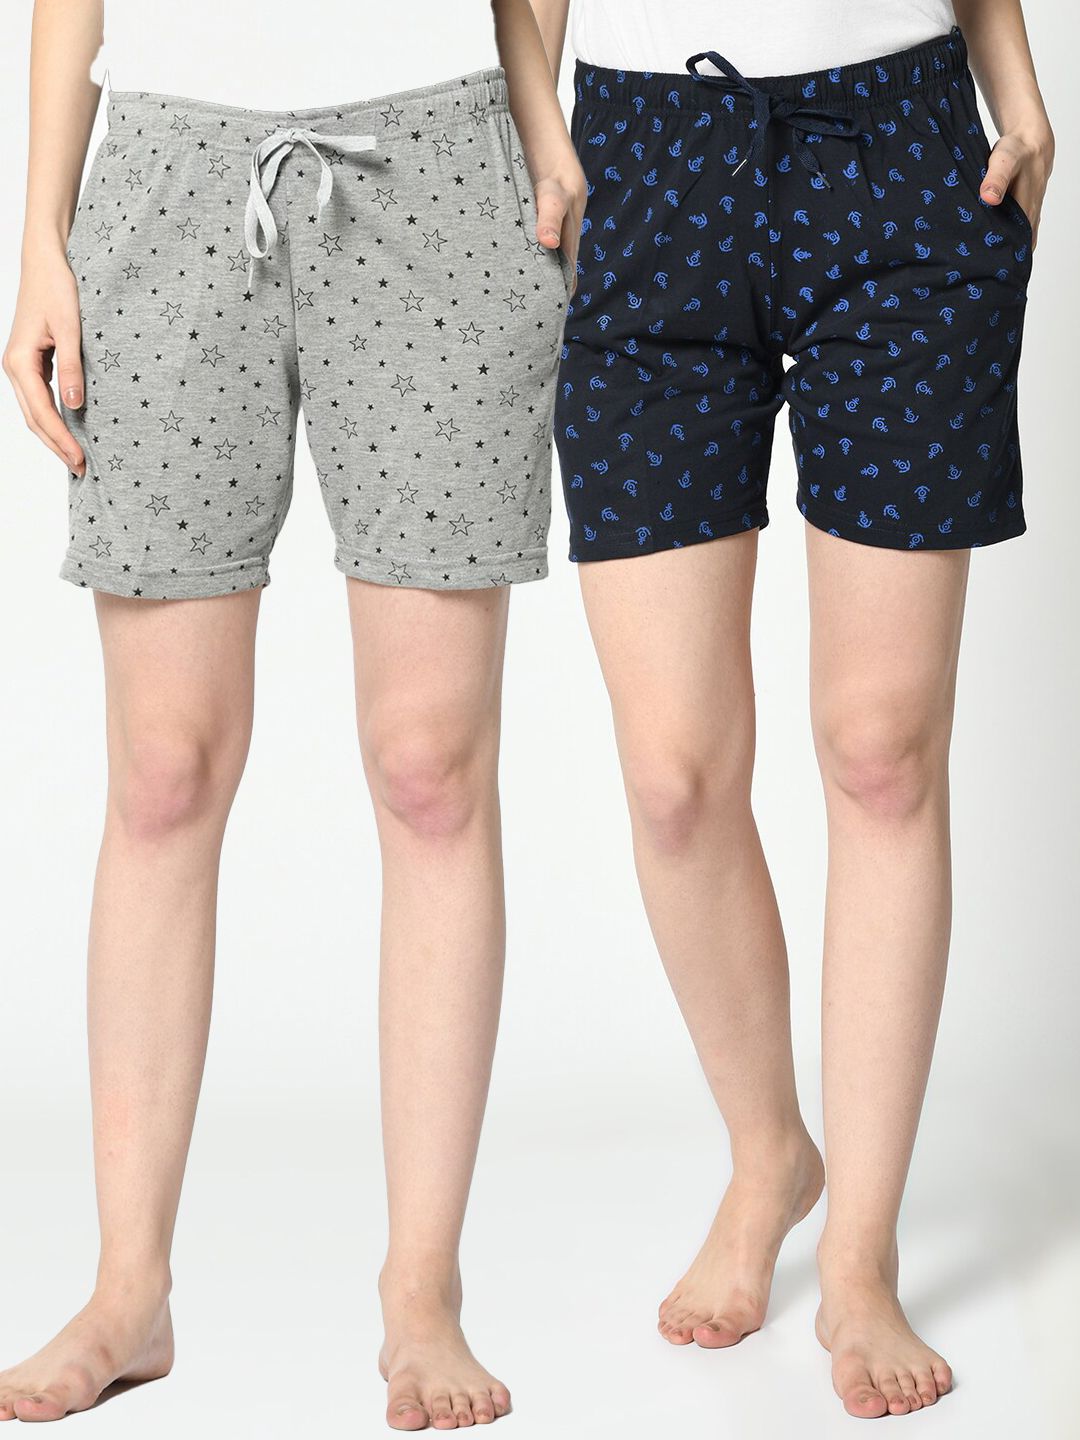 VIMAL JONNEY Set of 2 Women Grey & Navy Blue Printed Lounge Shorts Price in India